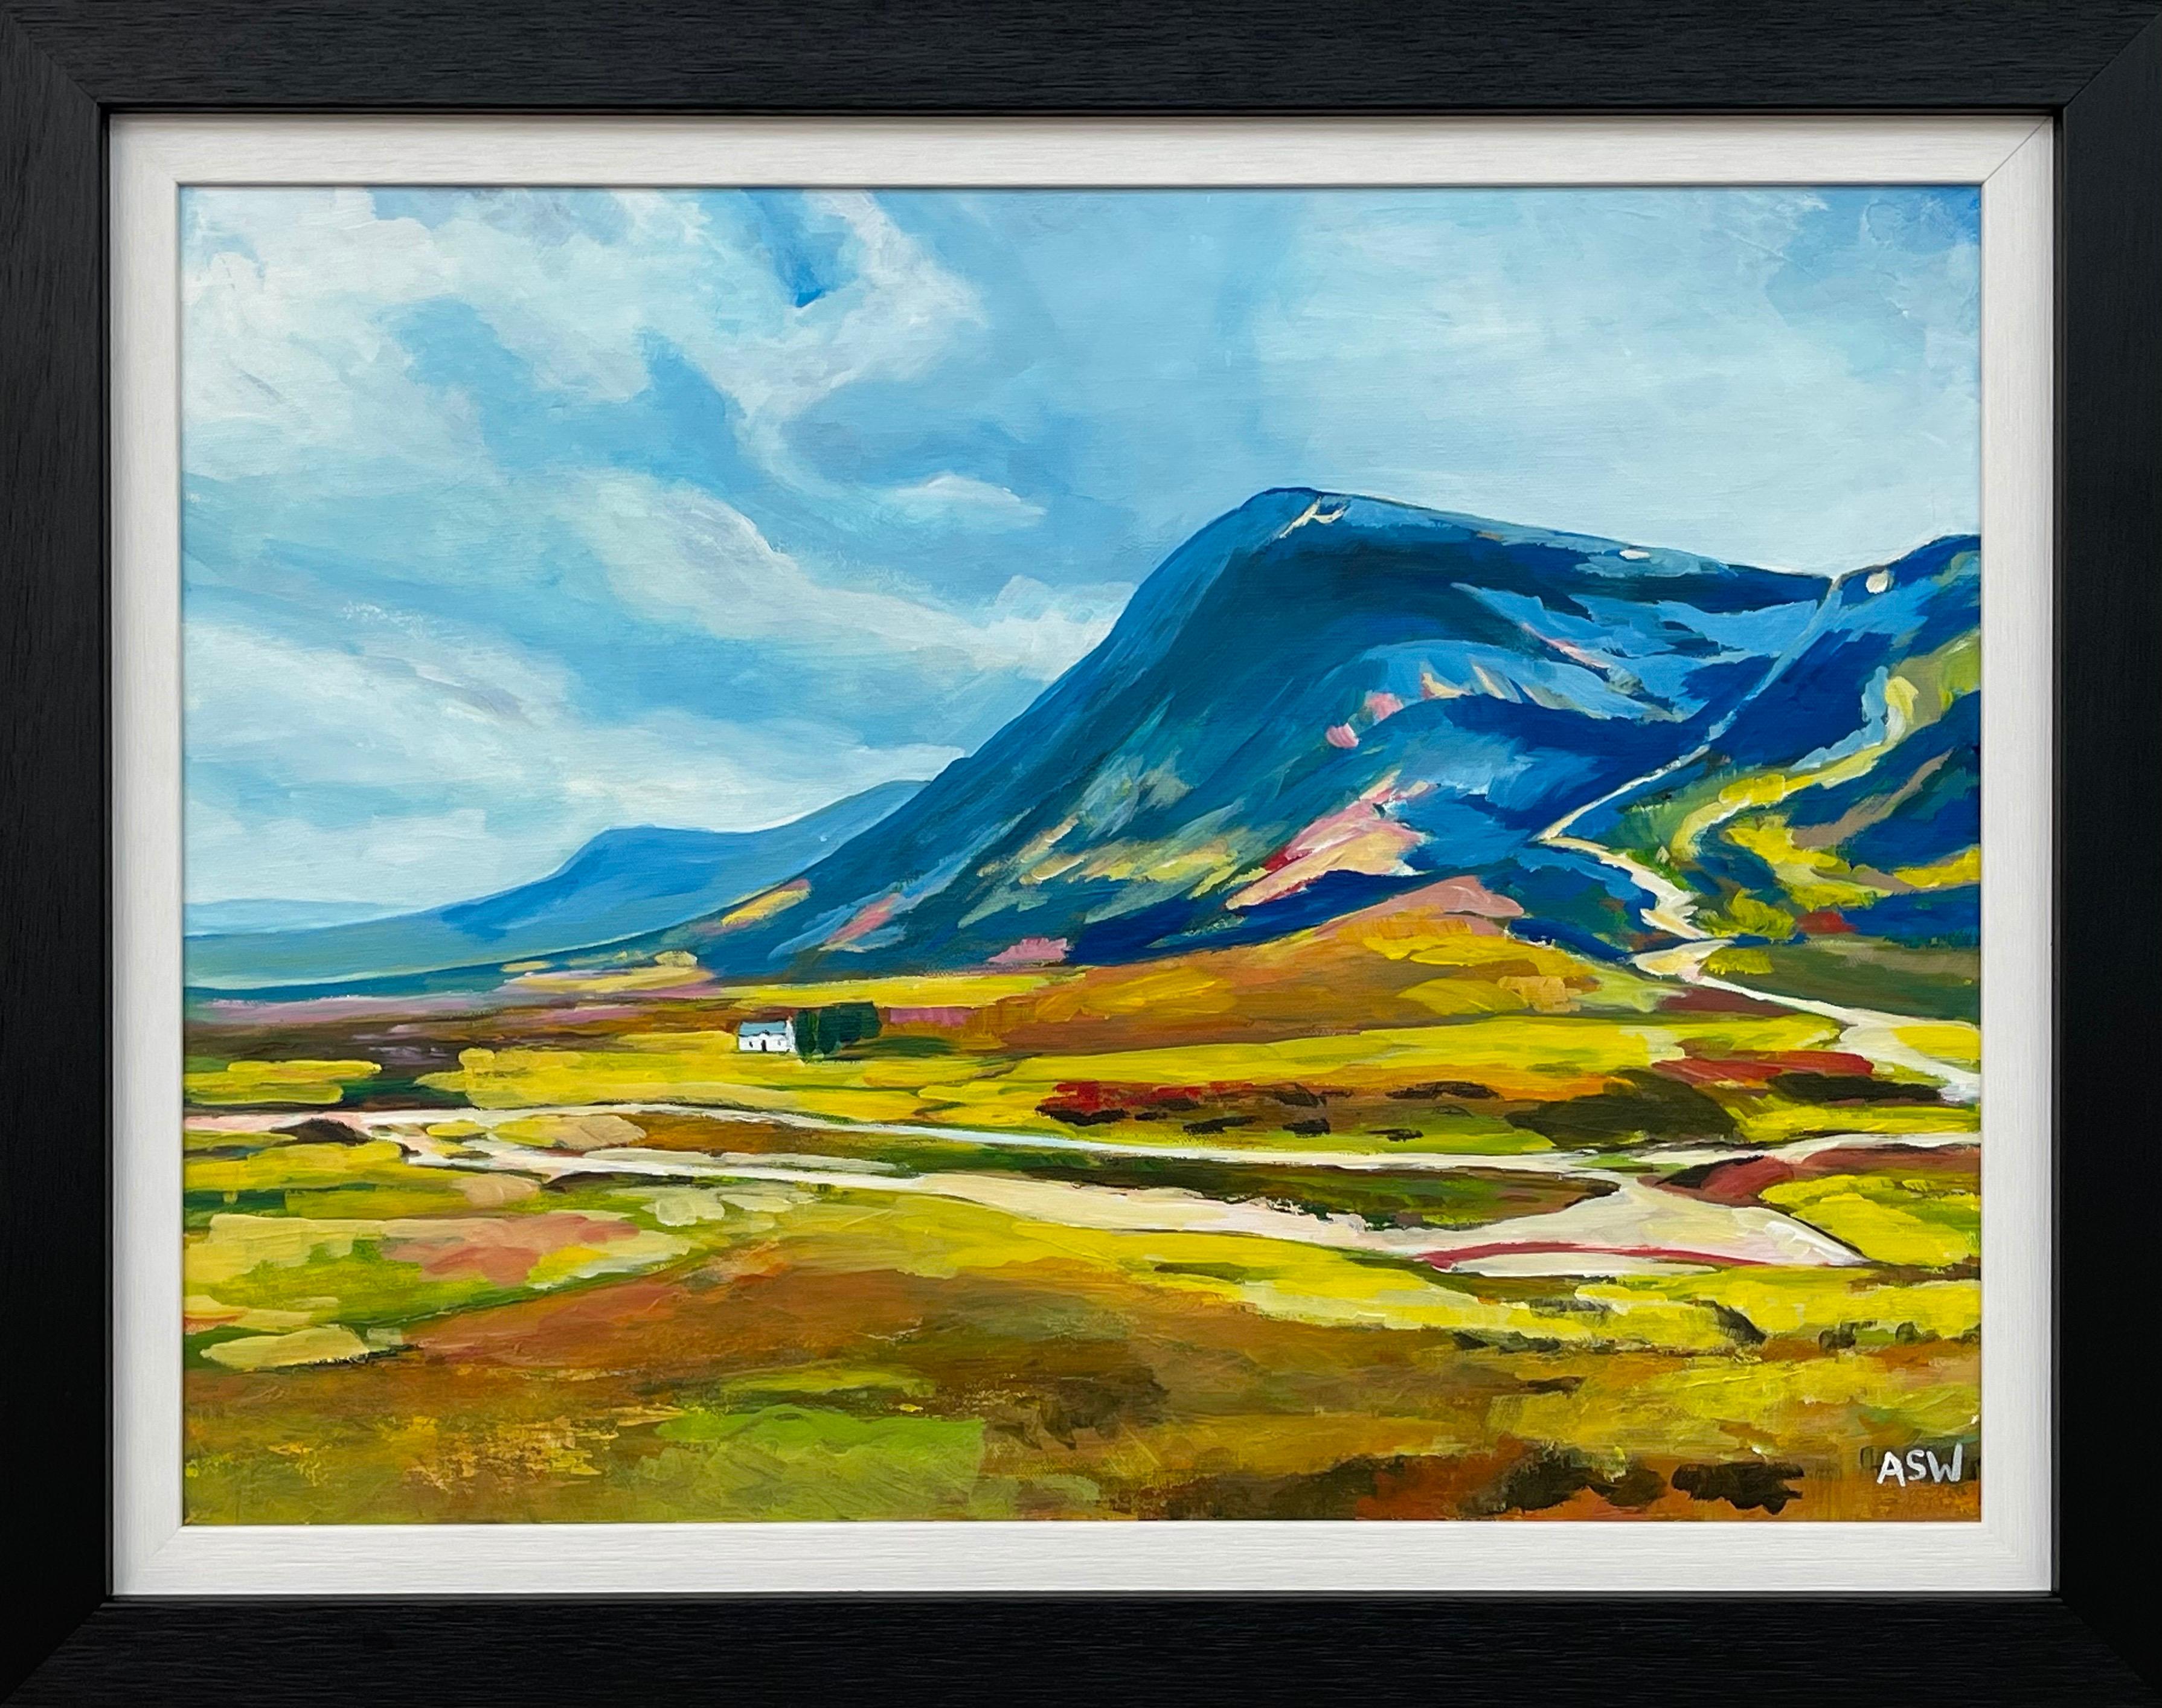 Peinture de paysage abstrait et colorée d'un artiste contemporain des Highlands écossais